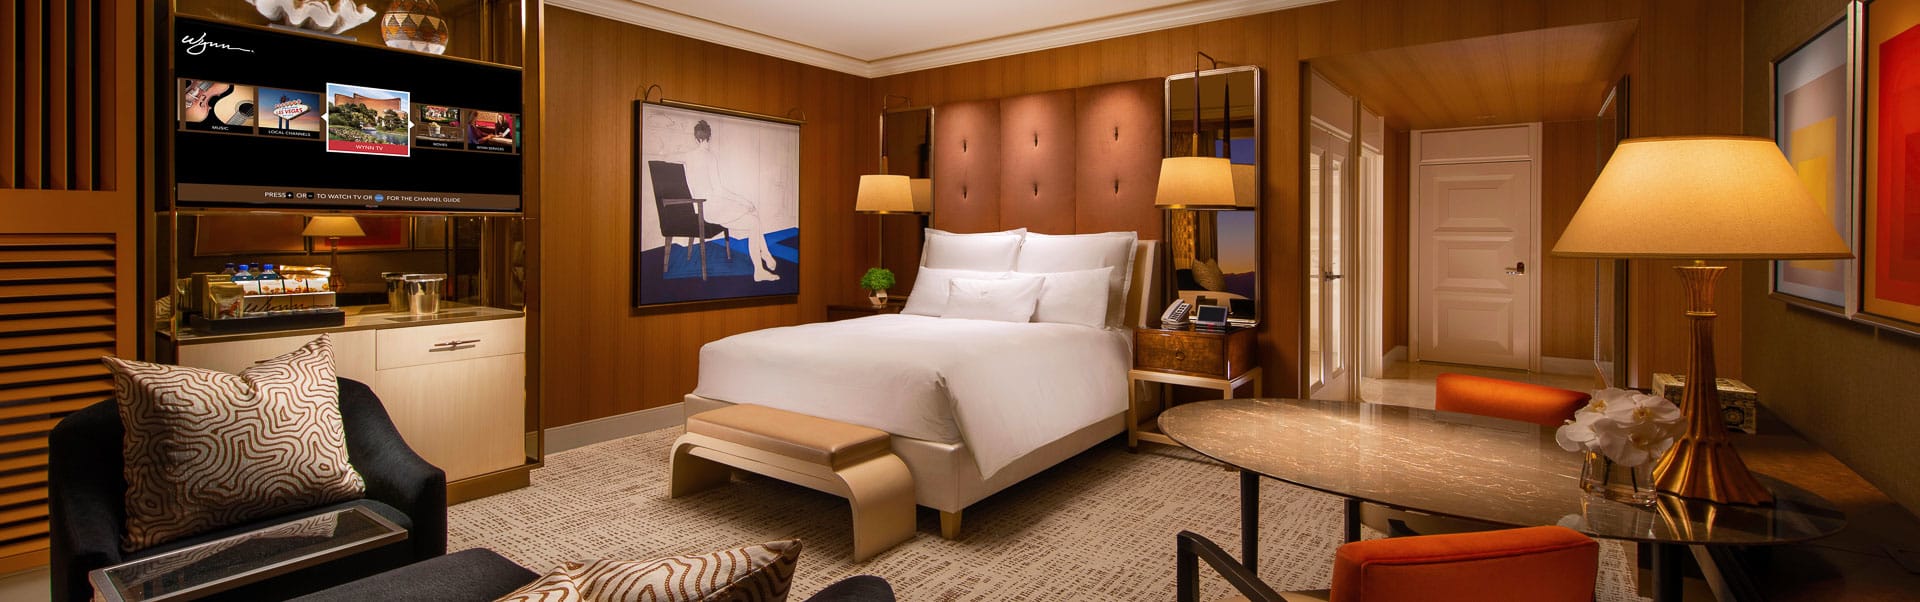 Hotel Rooms in Las Vegas, The Luxury King Room